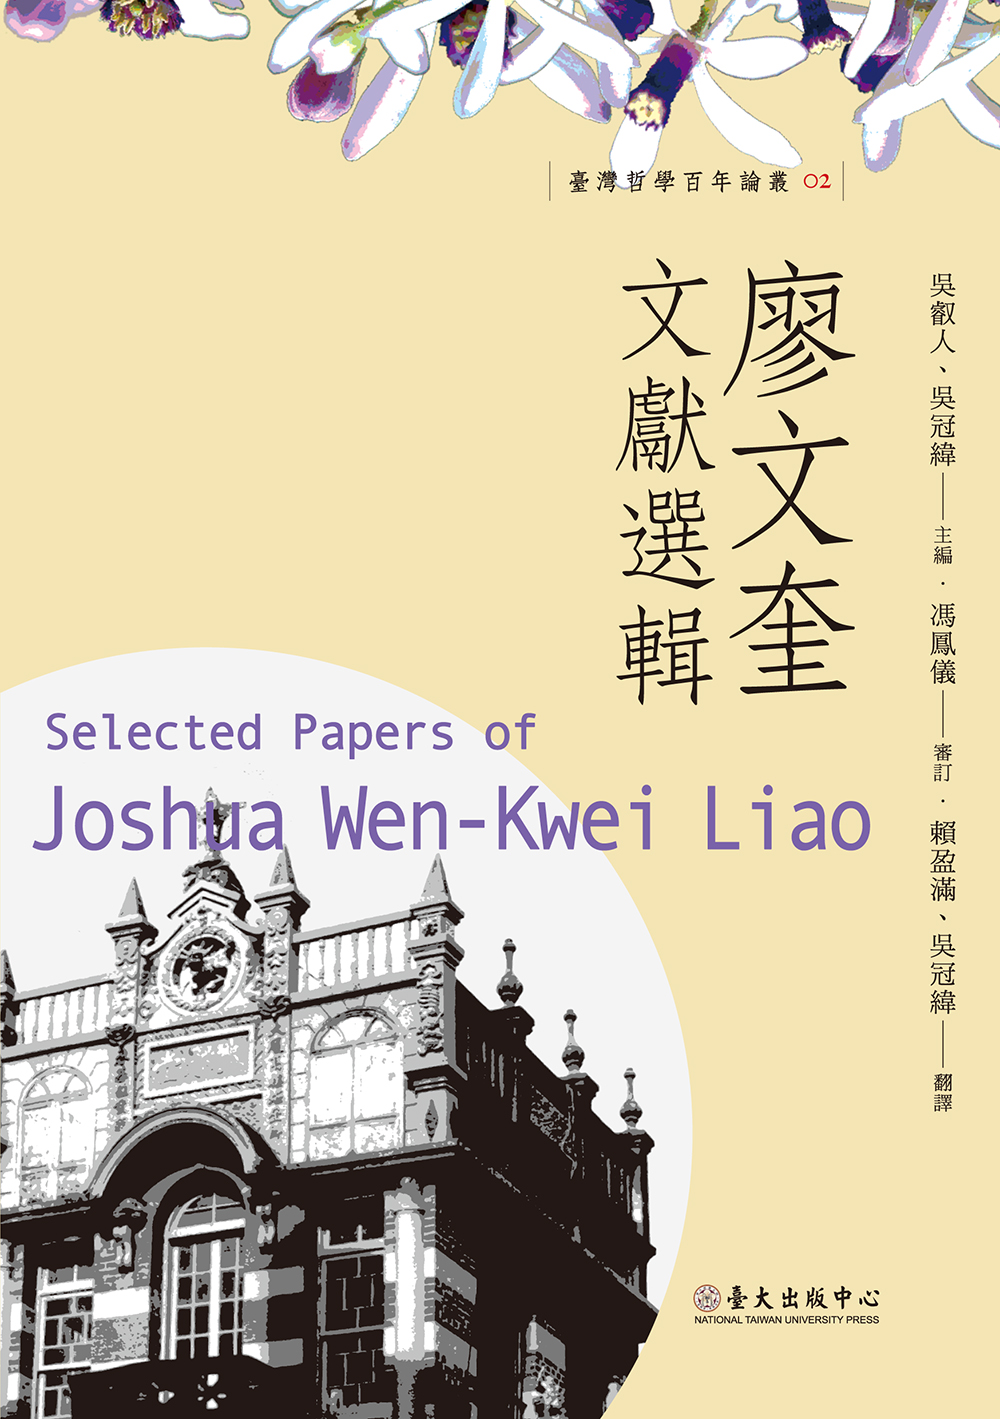 Selected Papers of Joshua Wen-Kuei Liao